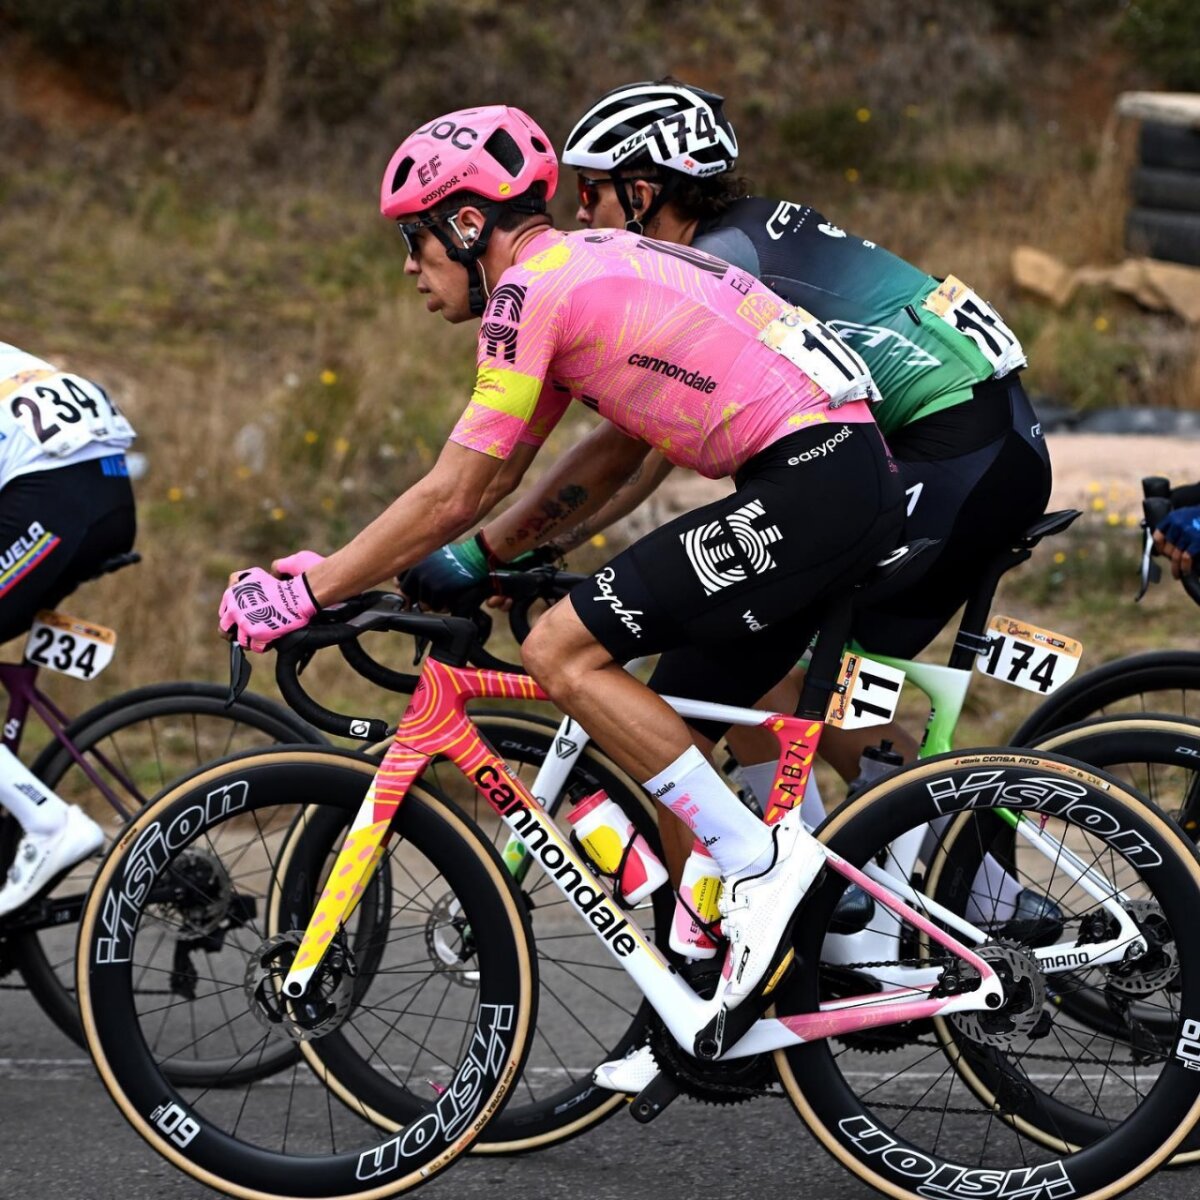 Rigoberto Urán sobre su retiro: "Solo tengo agradecimientos con el ciclismo" El ciclista Rigoberto Urán anunció su retiro del ciclismo, que será a final de la temporada. Contó cómo le dará final a su exitosa carrera.